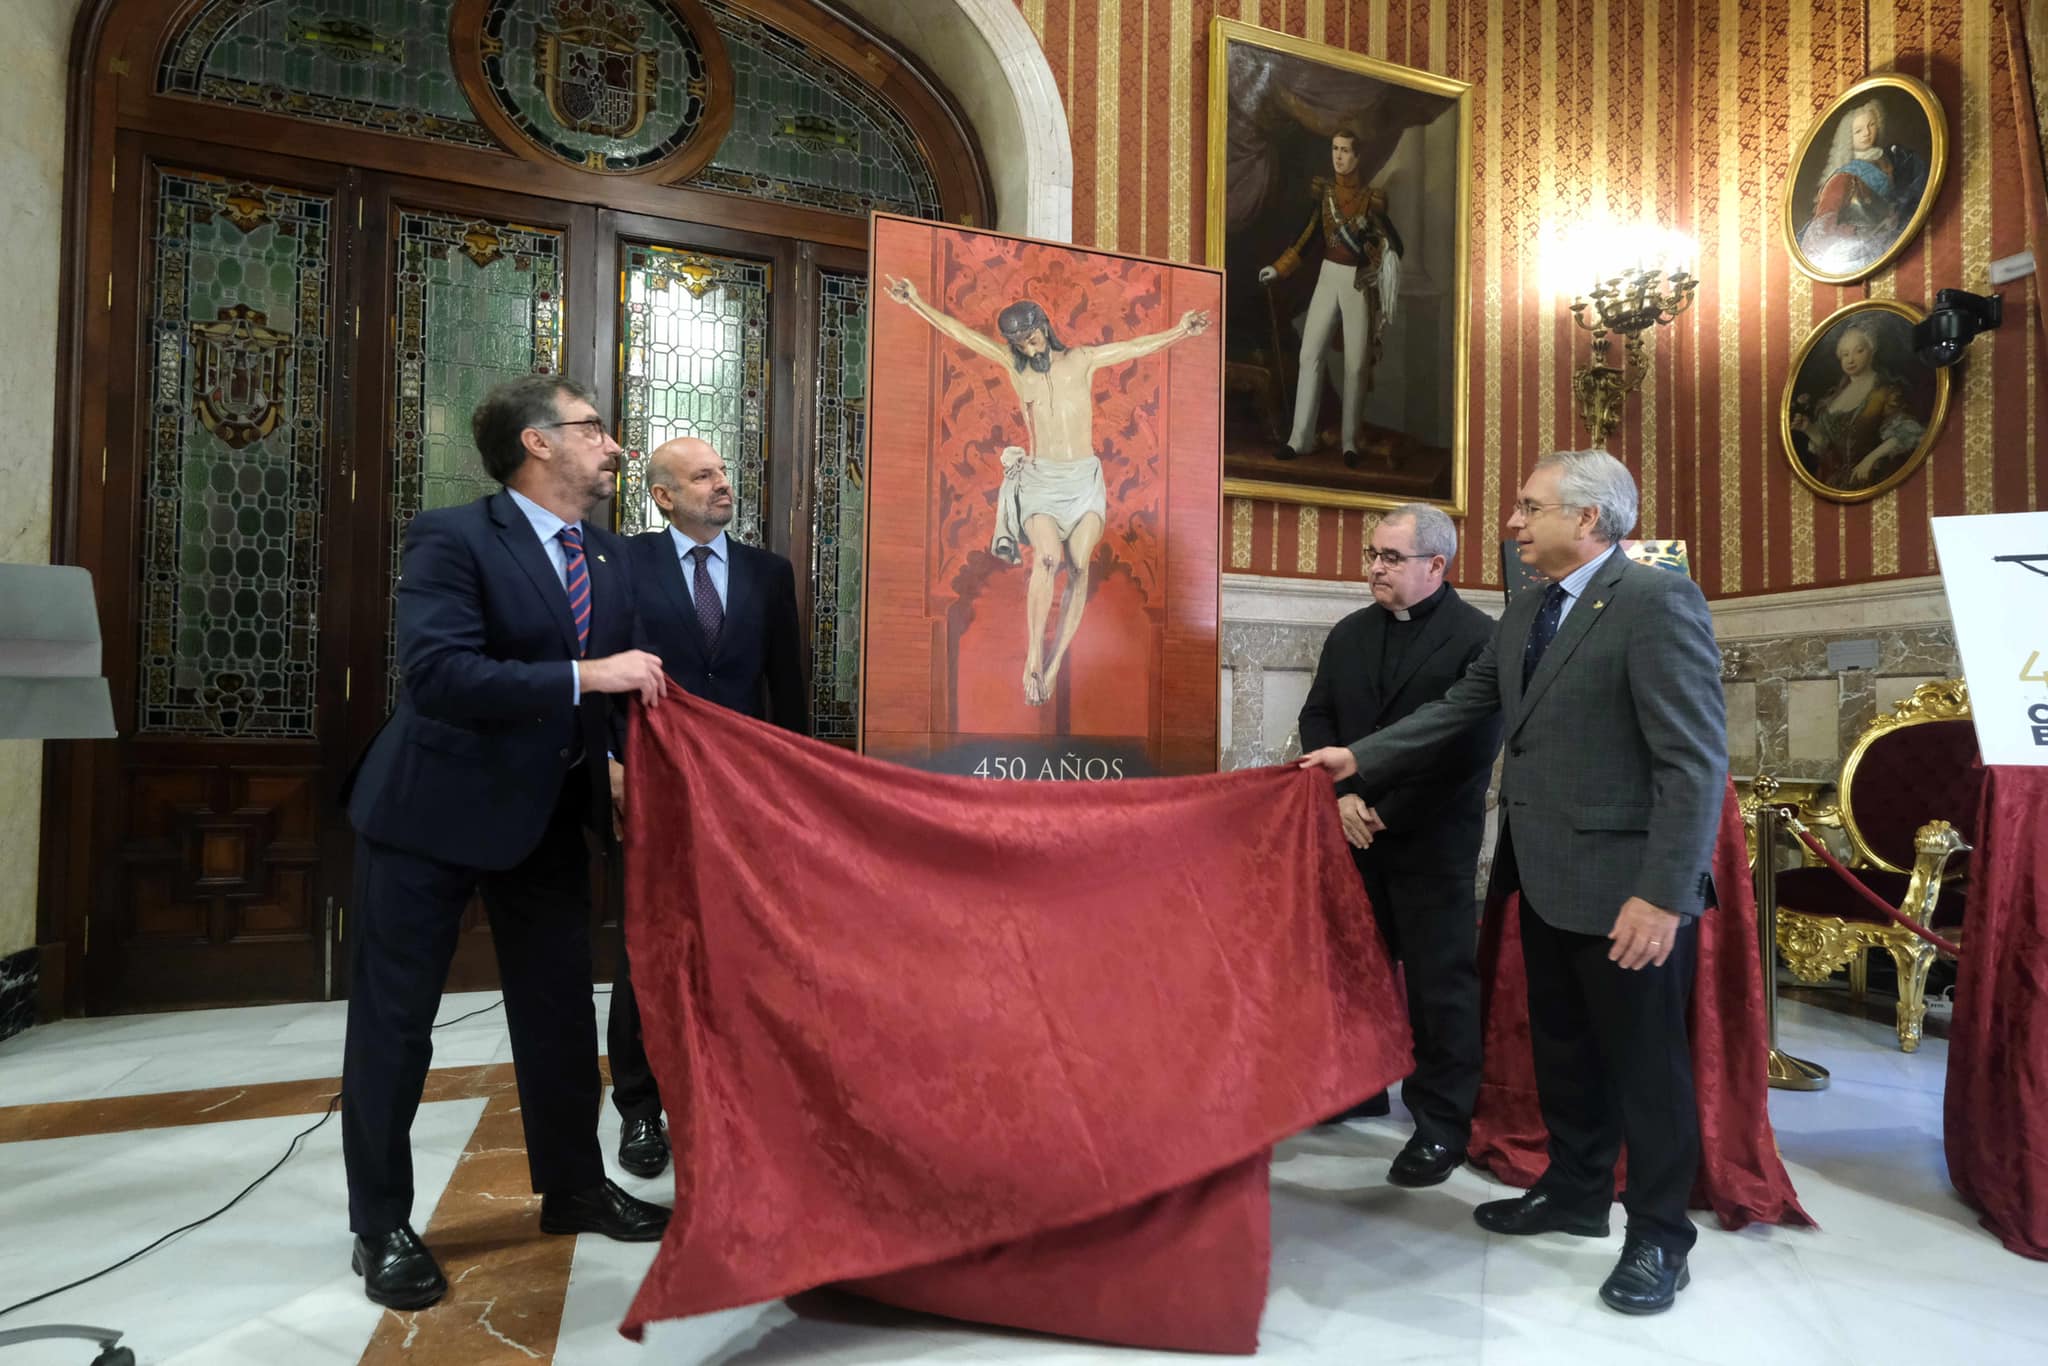 450 años del Cristo de Burgos: amplio programa de cultos y actos para esta efeméride. En la imagen, momento de la presentación del cuadro que será el cartel anunciador.